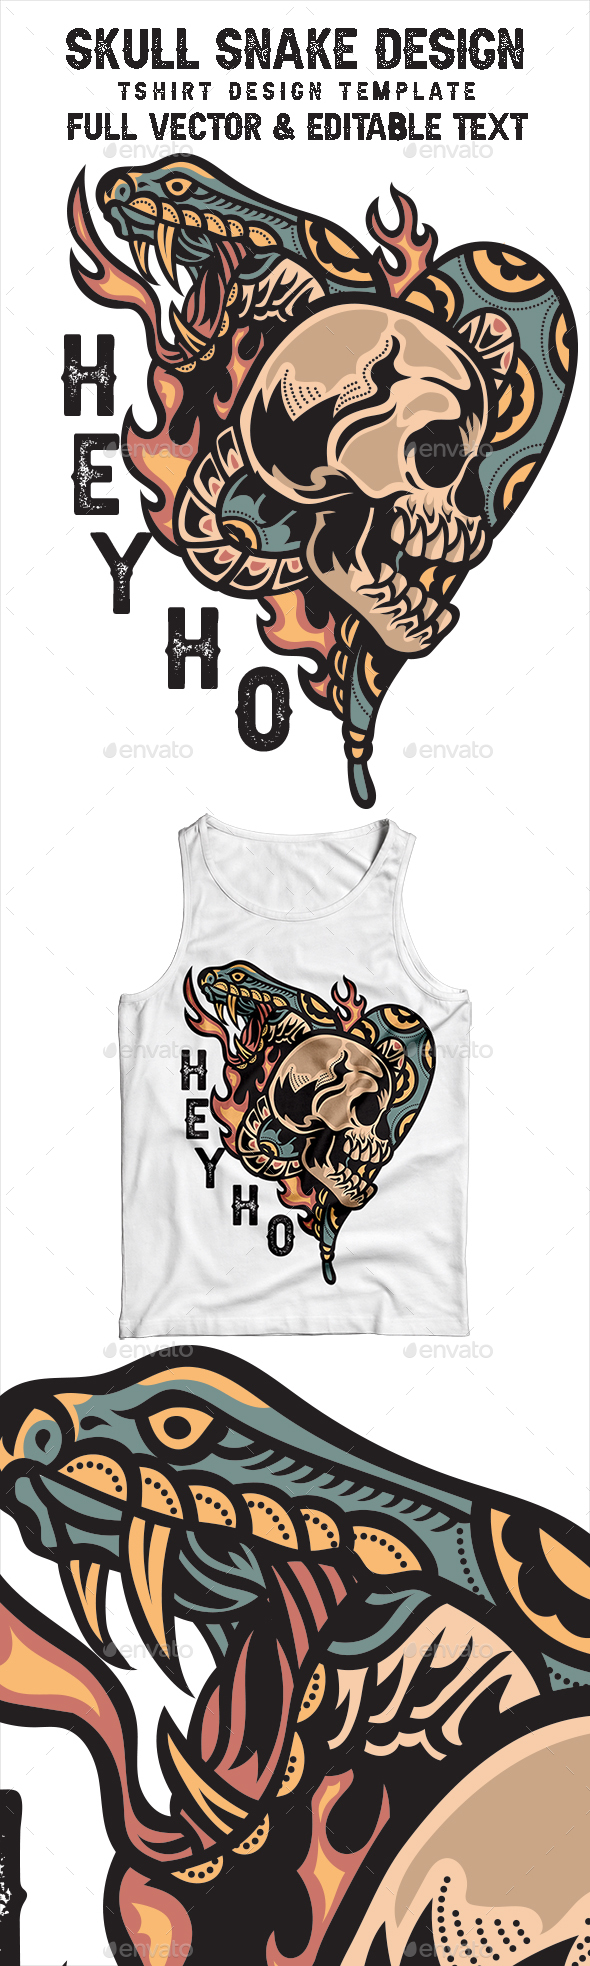 [DOWNLOAD]Skull Snake Vintage Tshirt